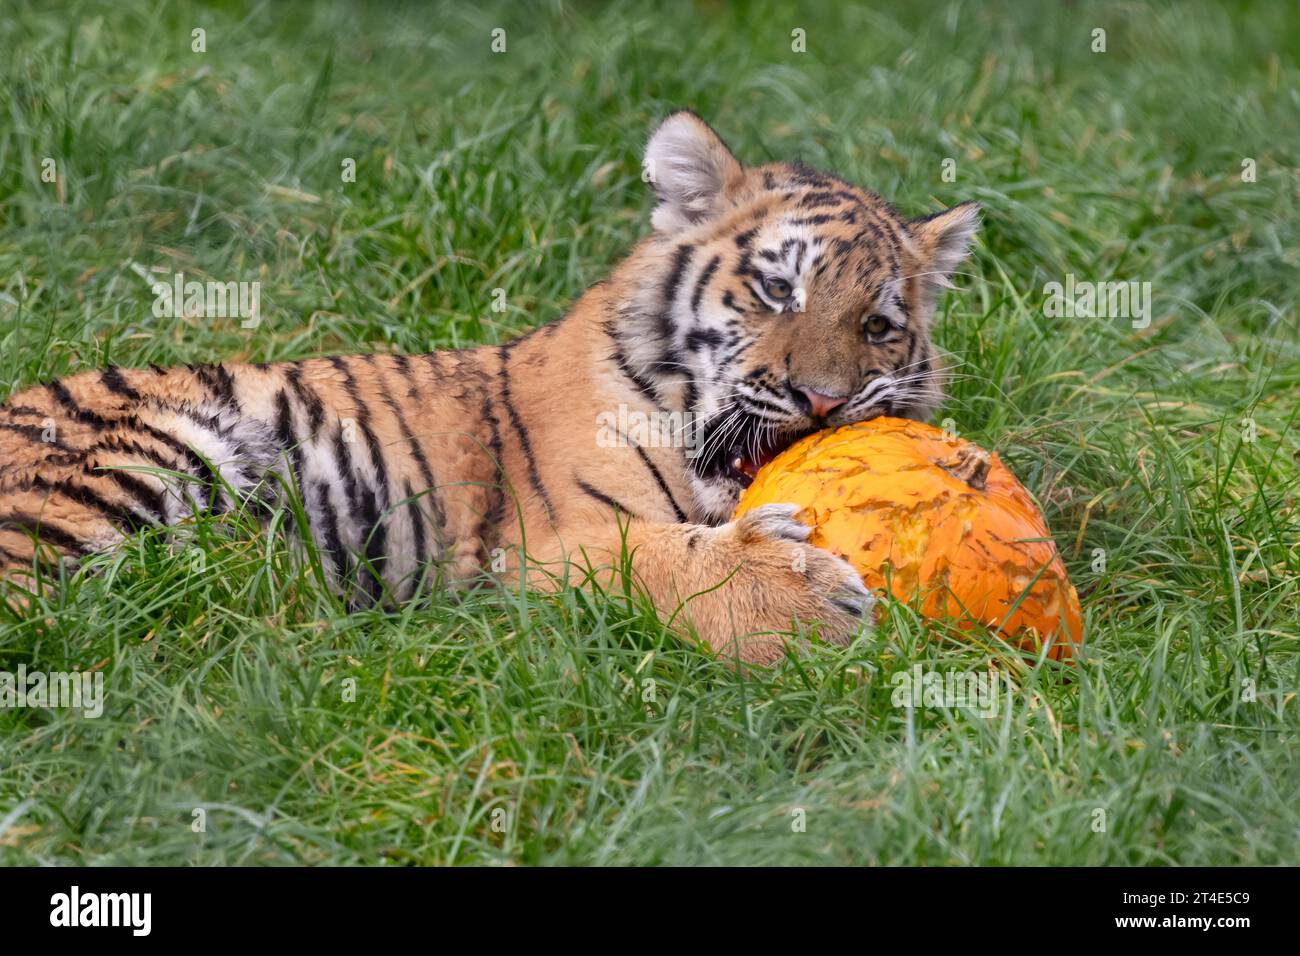 Das Tigerjunge versucht, seine Zähne in einen Kürbis zu versenken, der fast so groß ist wie er. BANHAM ZOO, NORFOLK, ENGLAND, BEZAUBERNDE BILDER eines fünf Monate alten Tigerjungen Stockfoto